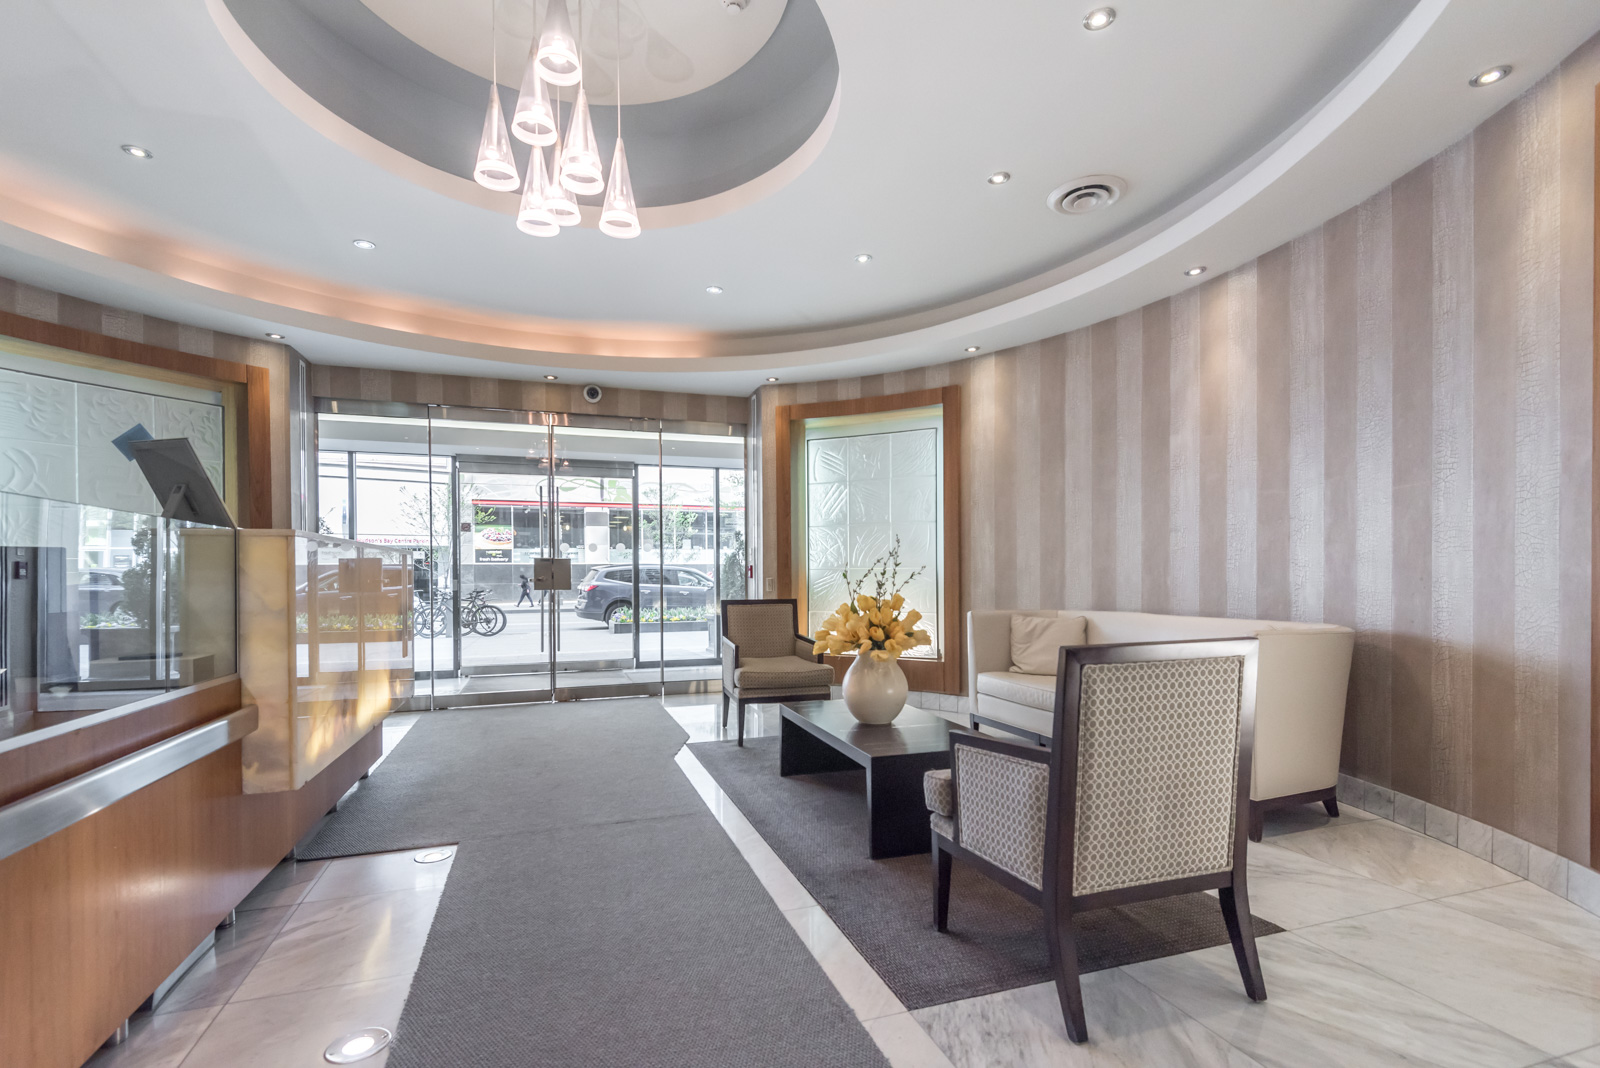 Elegant lobby and concierge desk of 85 Bloor Condos in Toronto.